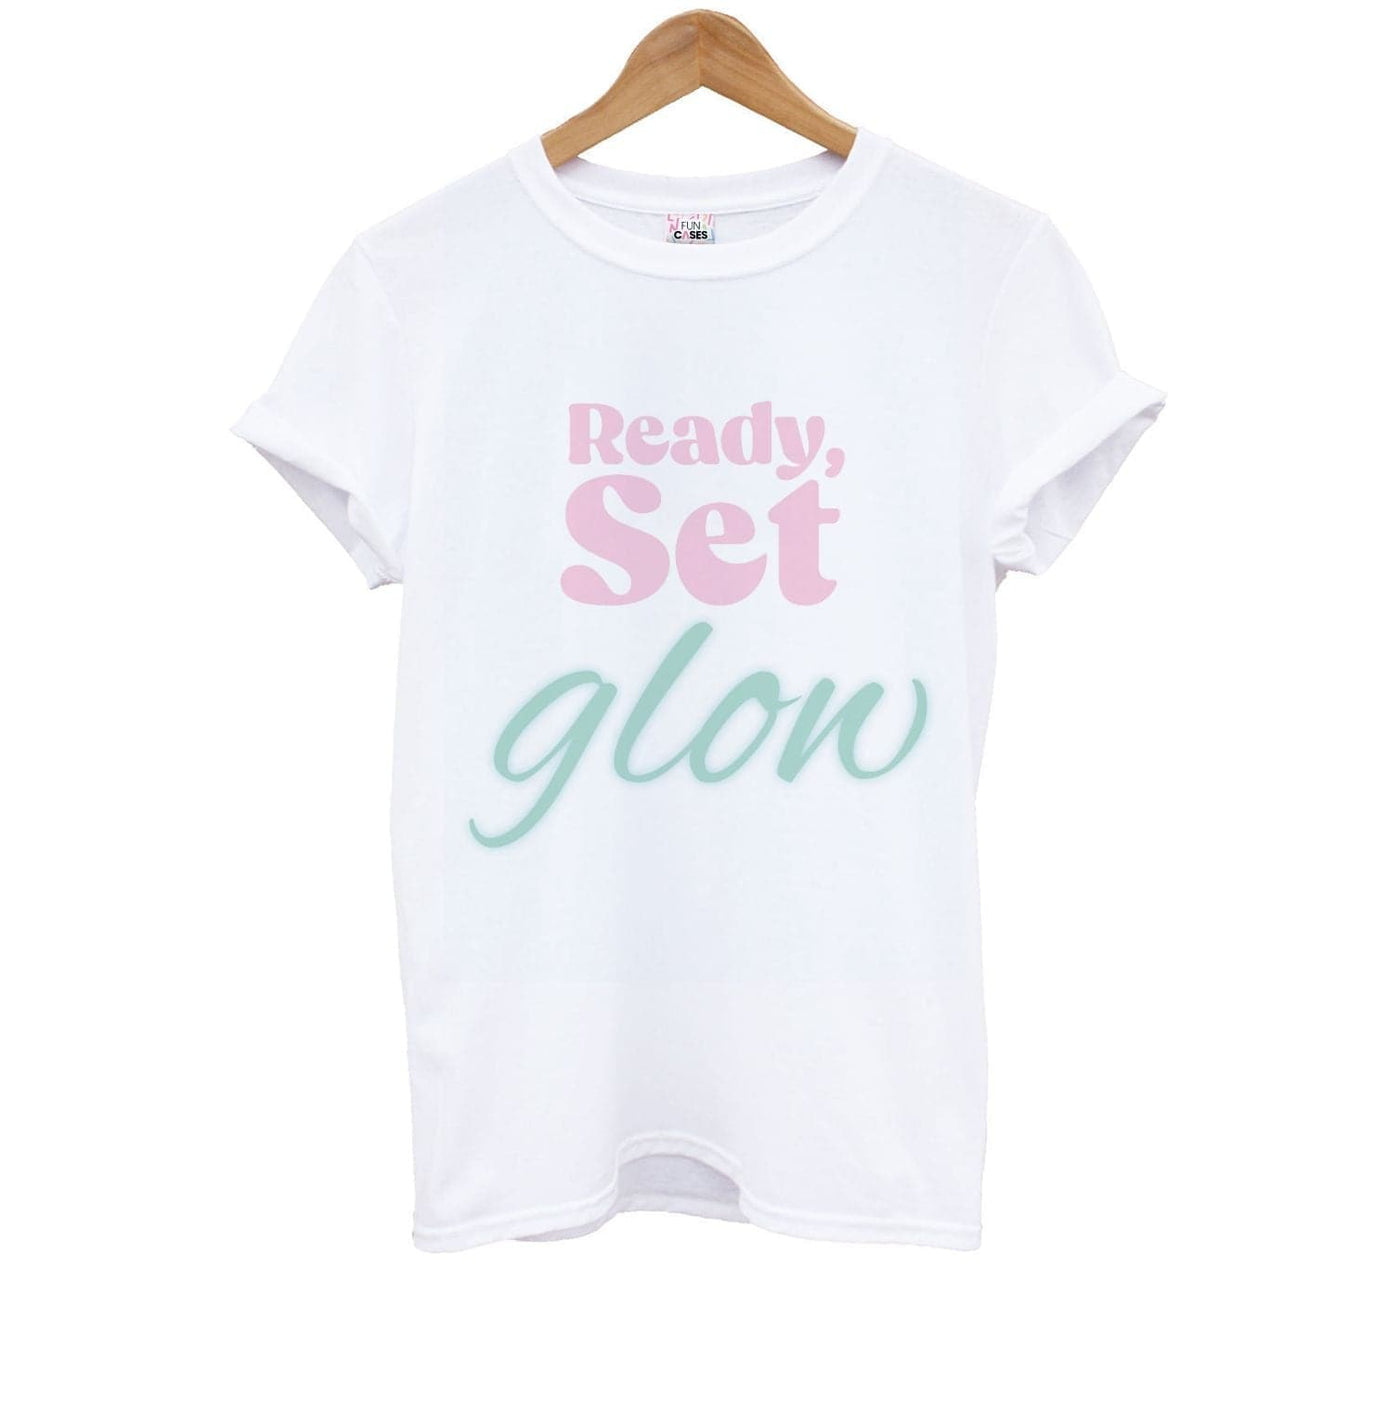 Ready, Set, Glow - Christmas Puns Kids T-Shirt